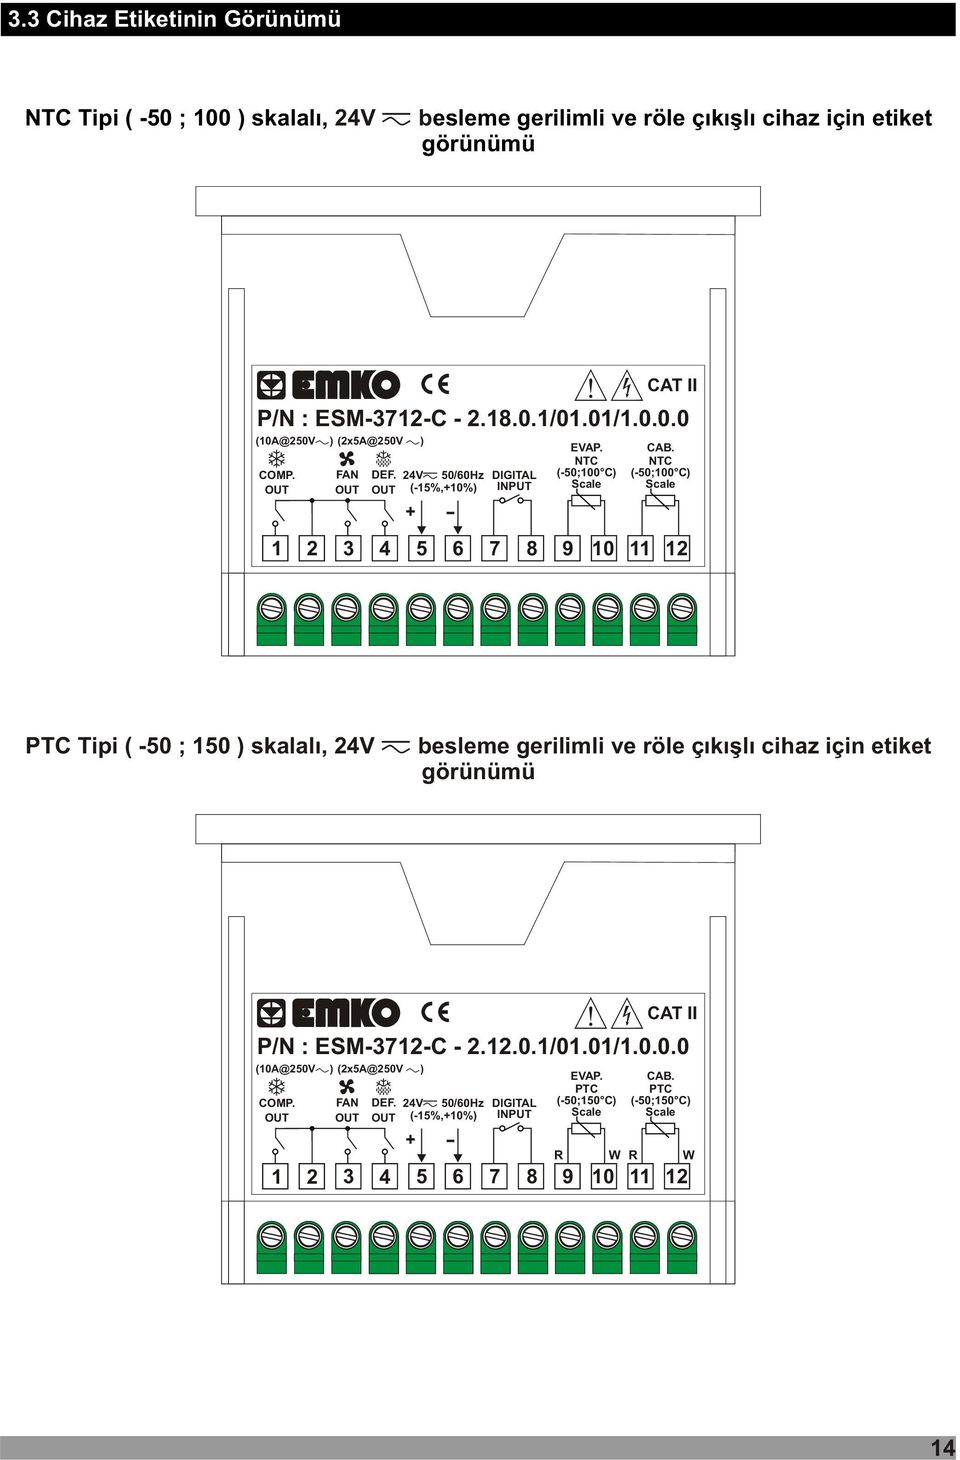 NTC (-50;100 C) Scale 1 2 3 4 5 6 7 8 9 10 11 12 PTC Tipi ( -50 ; 150 ) skalalý, 24V besleme gerilimli ve röle çýkýþlý cihaz için etiket görünümü P/N : ESM-3712-C - 2.12.0.1/01.